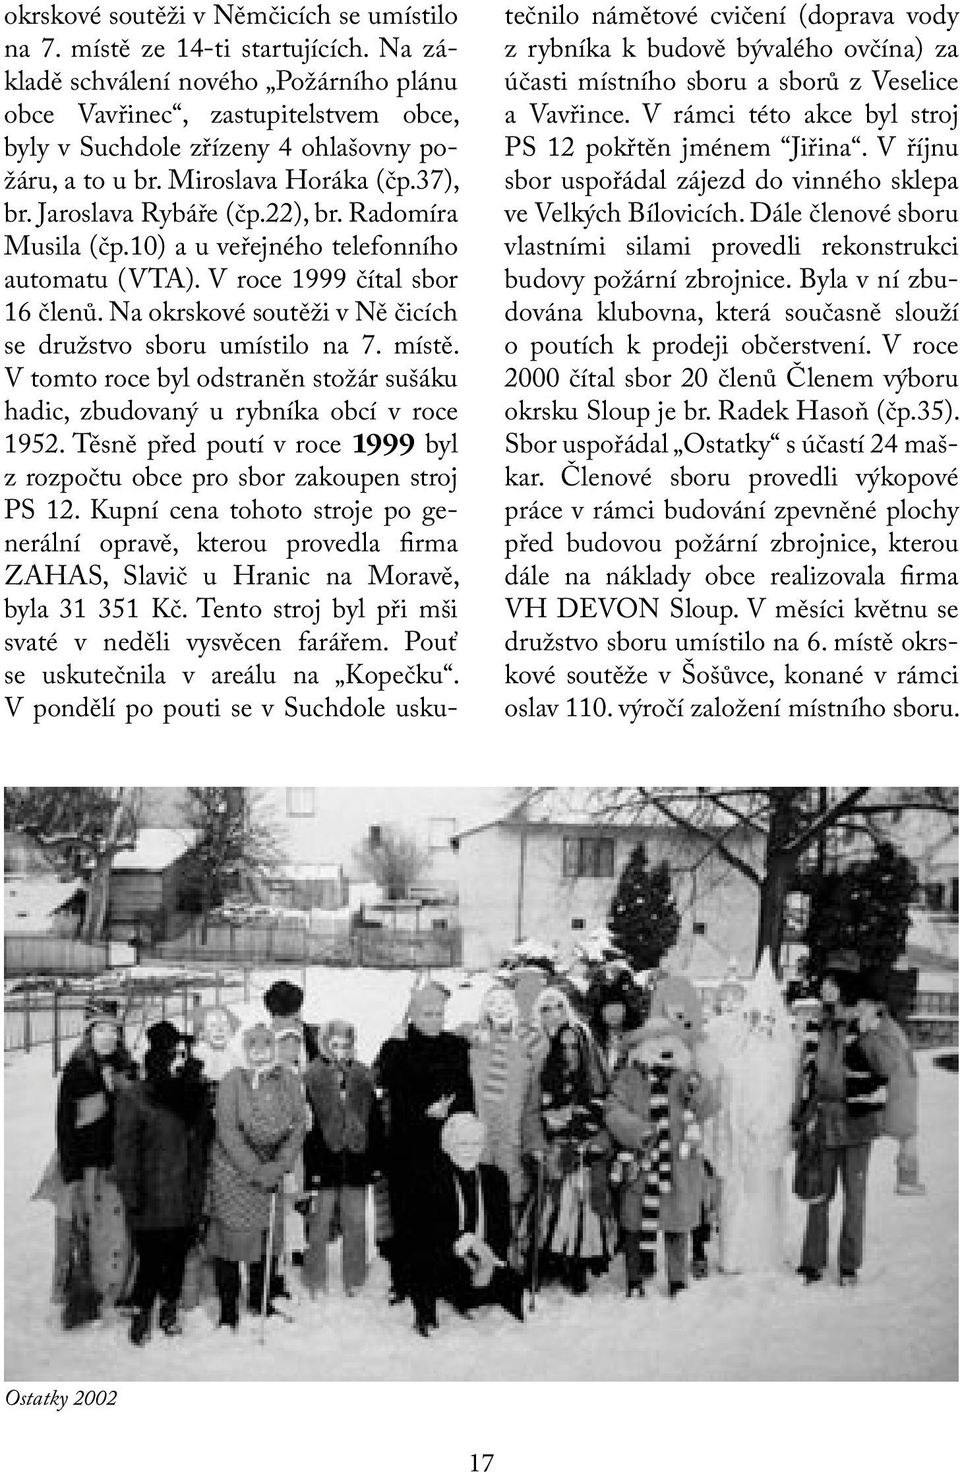 Radomíra Musila (čp.10) a u veřejného telefonního automatu (VTA). V roce 1999 čítal sbor 16 členů. Na okrskové soutěži v Ně čicích se družstvo sboru umístilo na 7. místě.